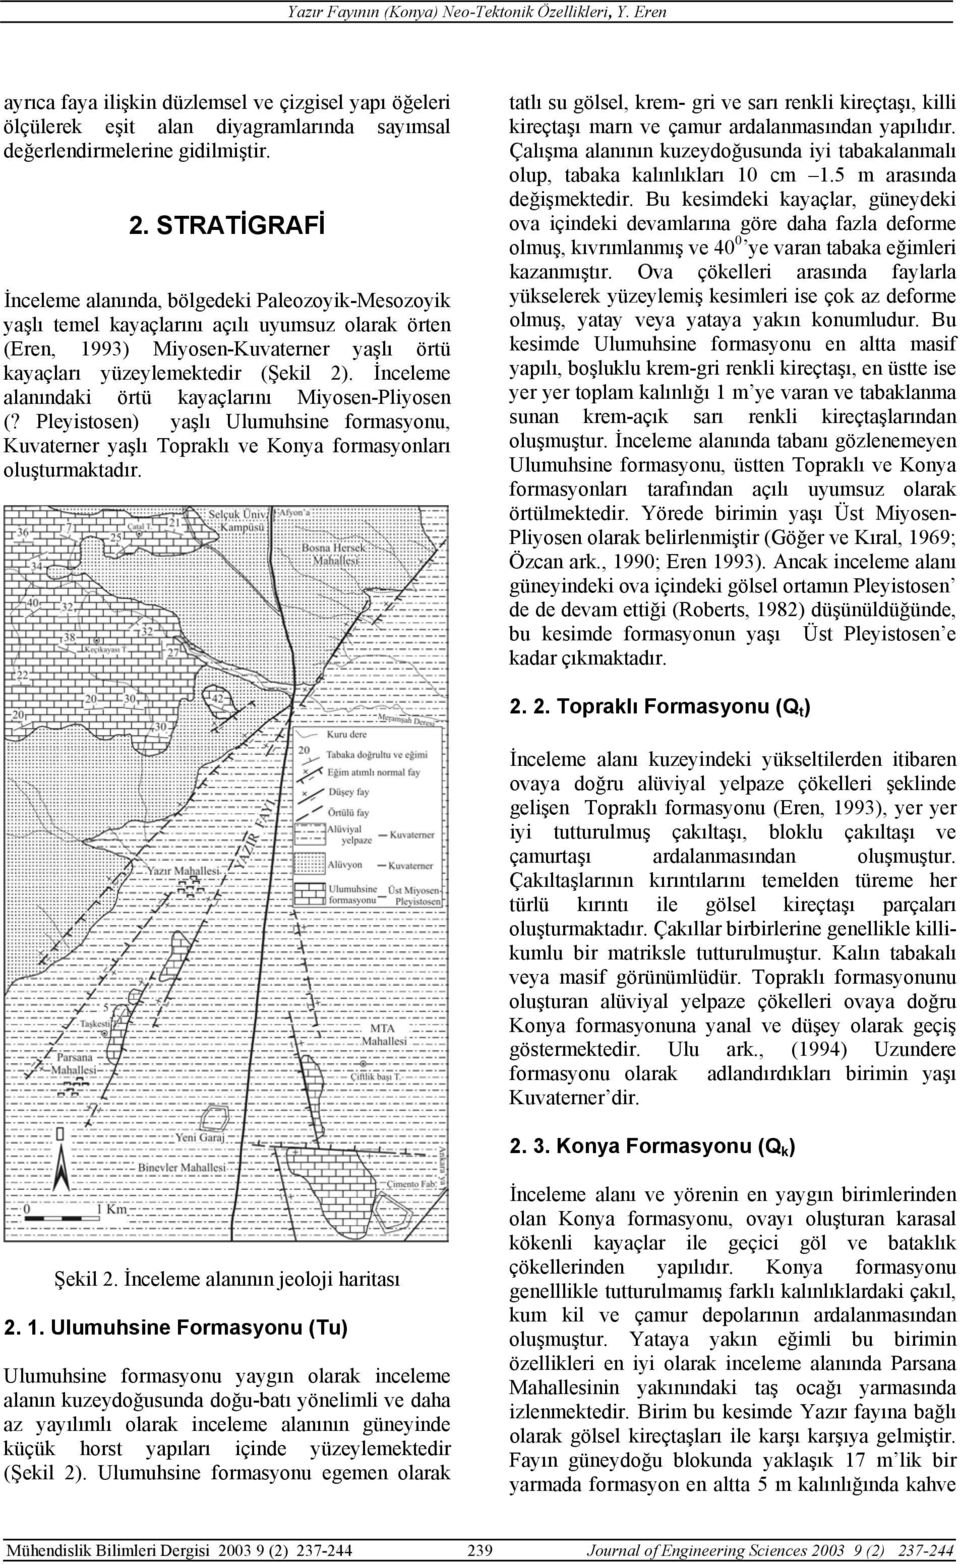 İnceleme alanındaki örtü kayaçlarını Miyosen-Pliyosen (? Pleyistosen) yaşlı Ulumuhsine formasyonu, Kuvaterner yaşlı Topraklı ve Konya formasyonları oluşturmaktadır.